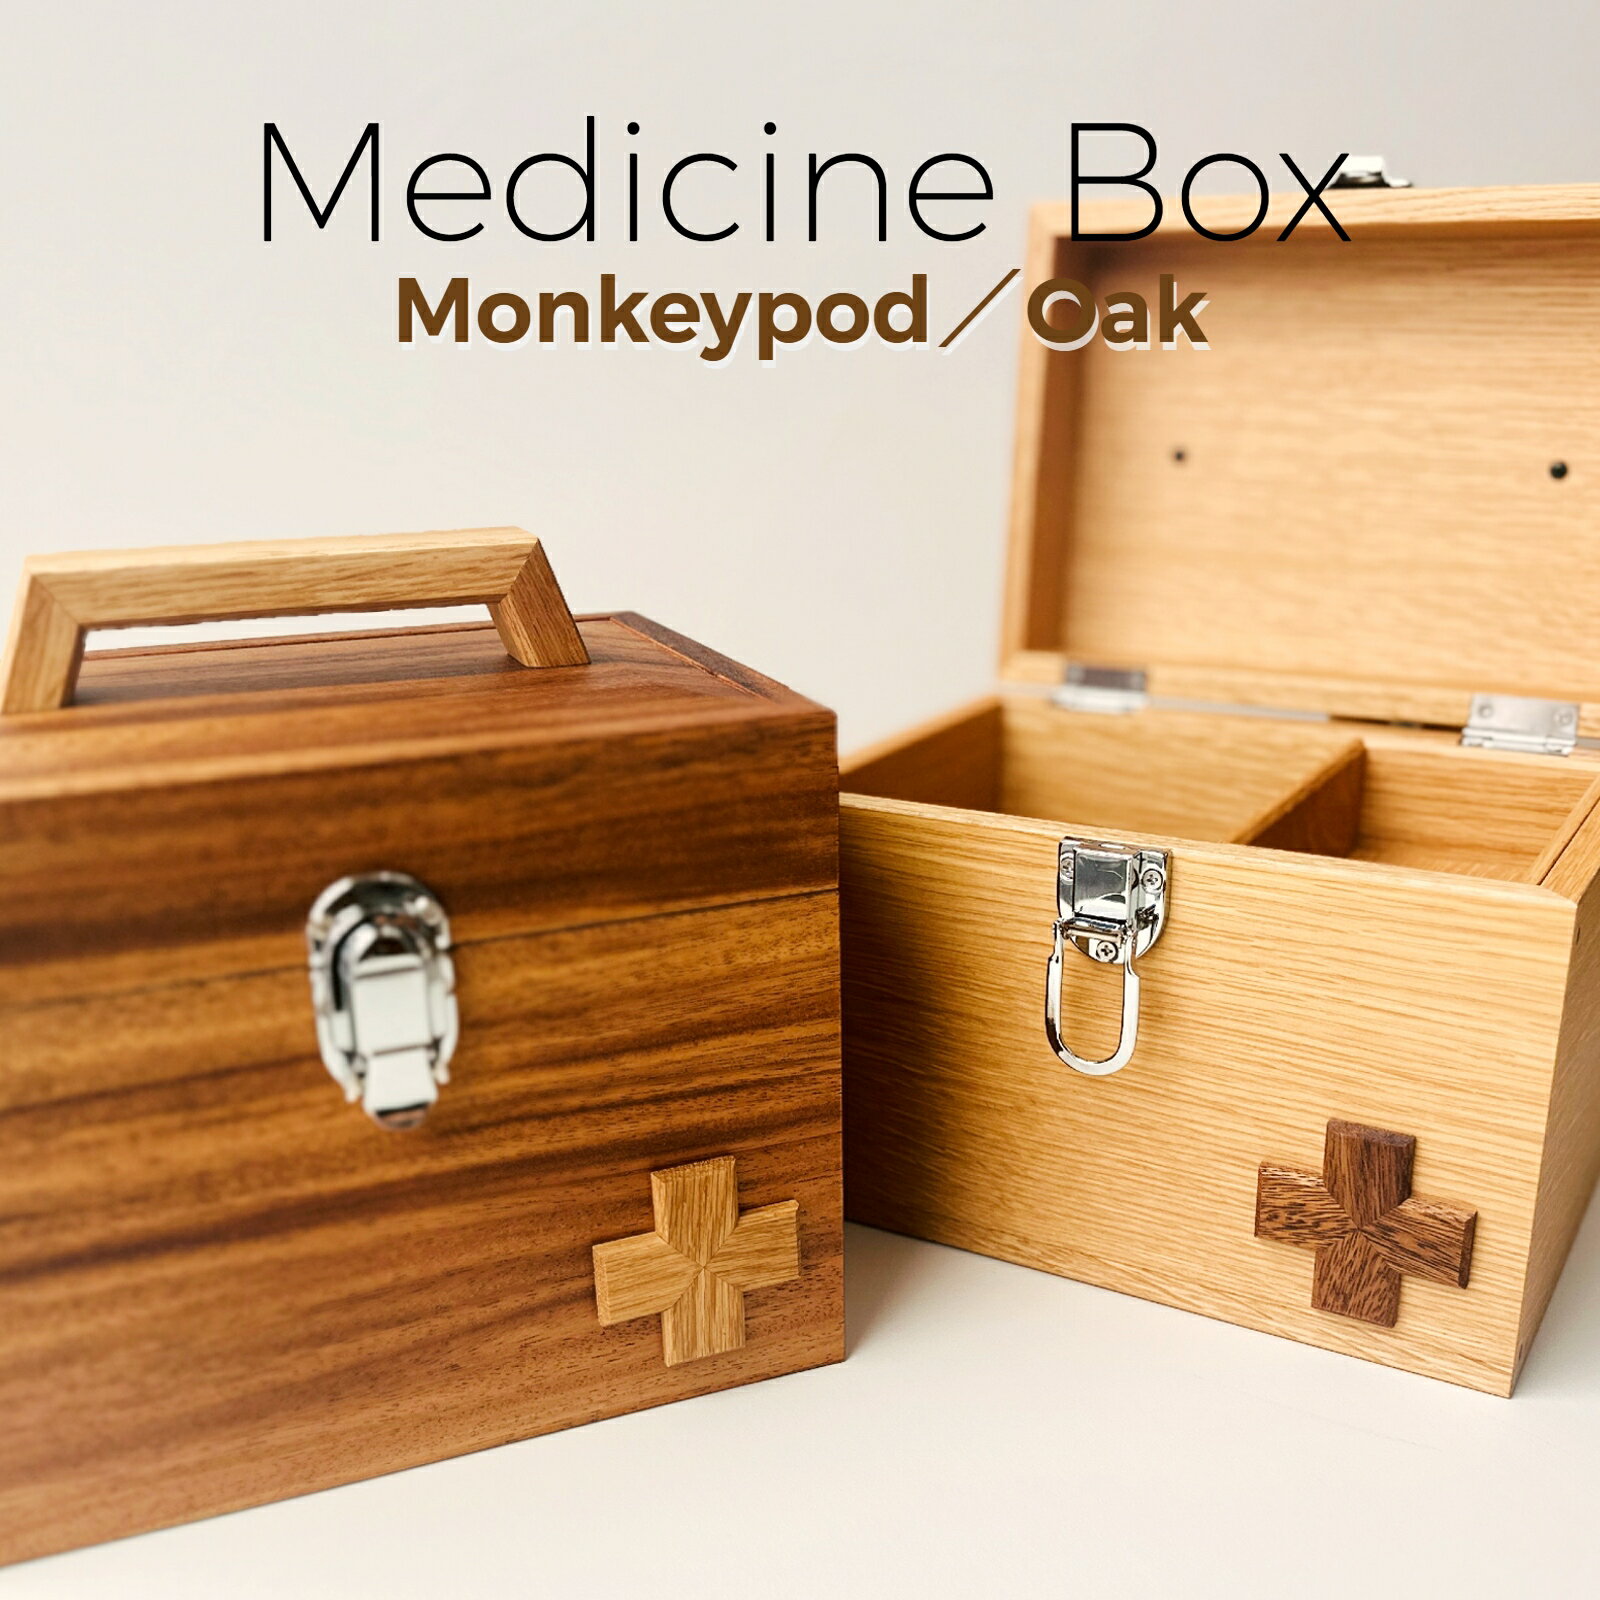 薬箱 木箱 クスリ箱 オシャレ 北欧 モダン ナチュラル シンプル かわいい 収納 収納箱 インテリア 日本製 Ricod リコッド medicine box